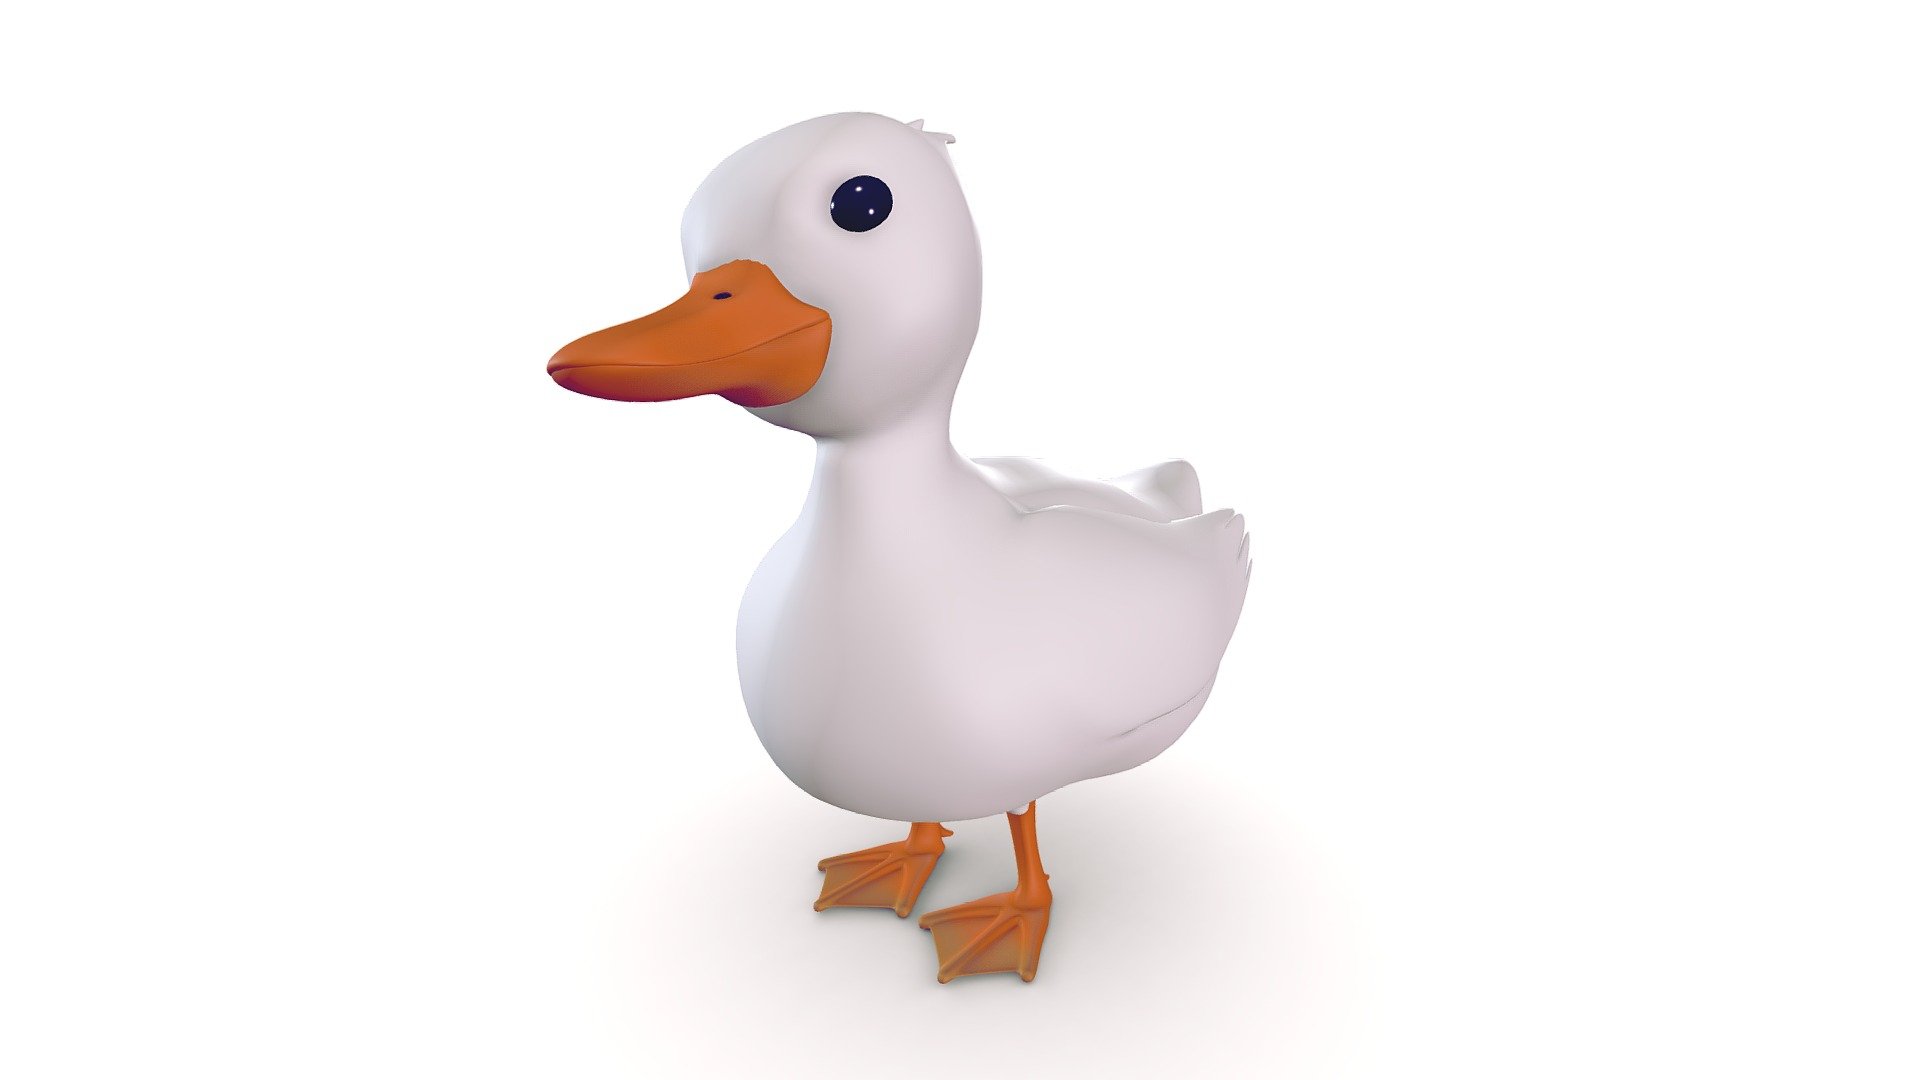 Little cute Duck
Model from blender - Cute little Duck - Download Free 3D model by TadenStar 3d model